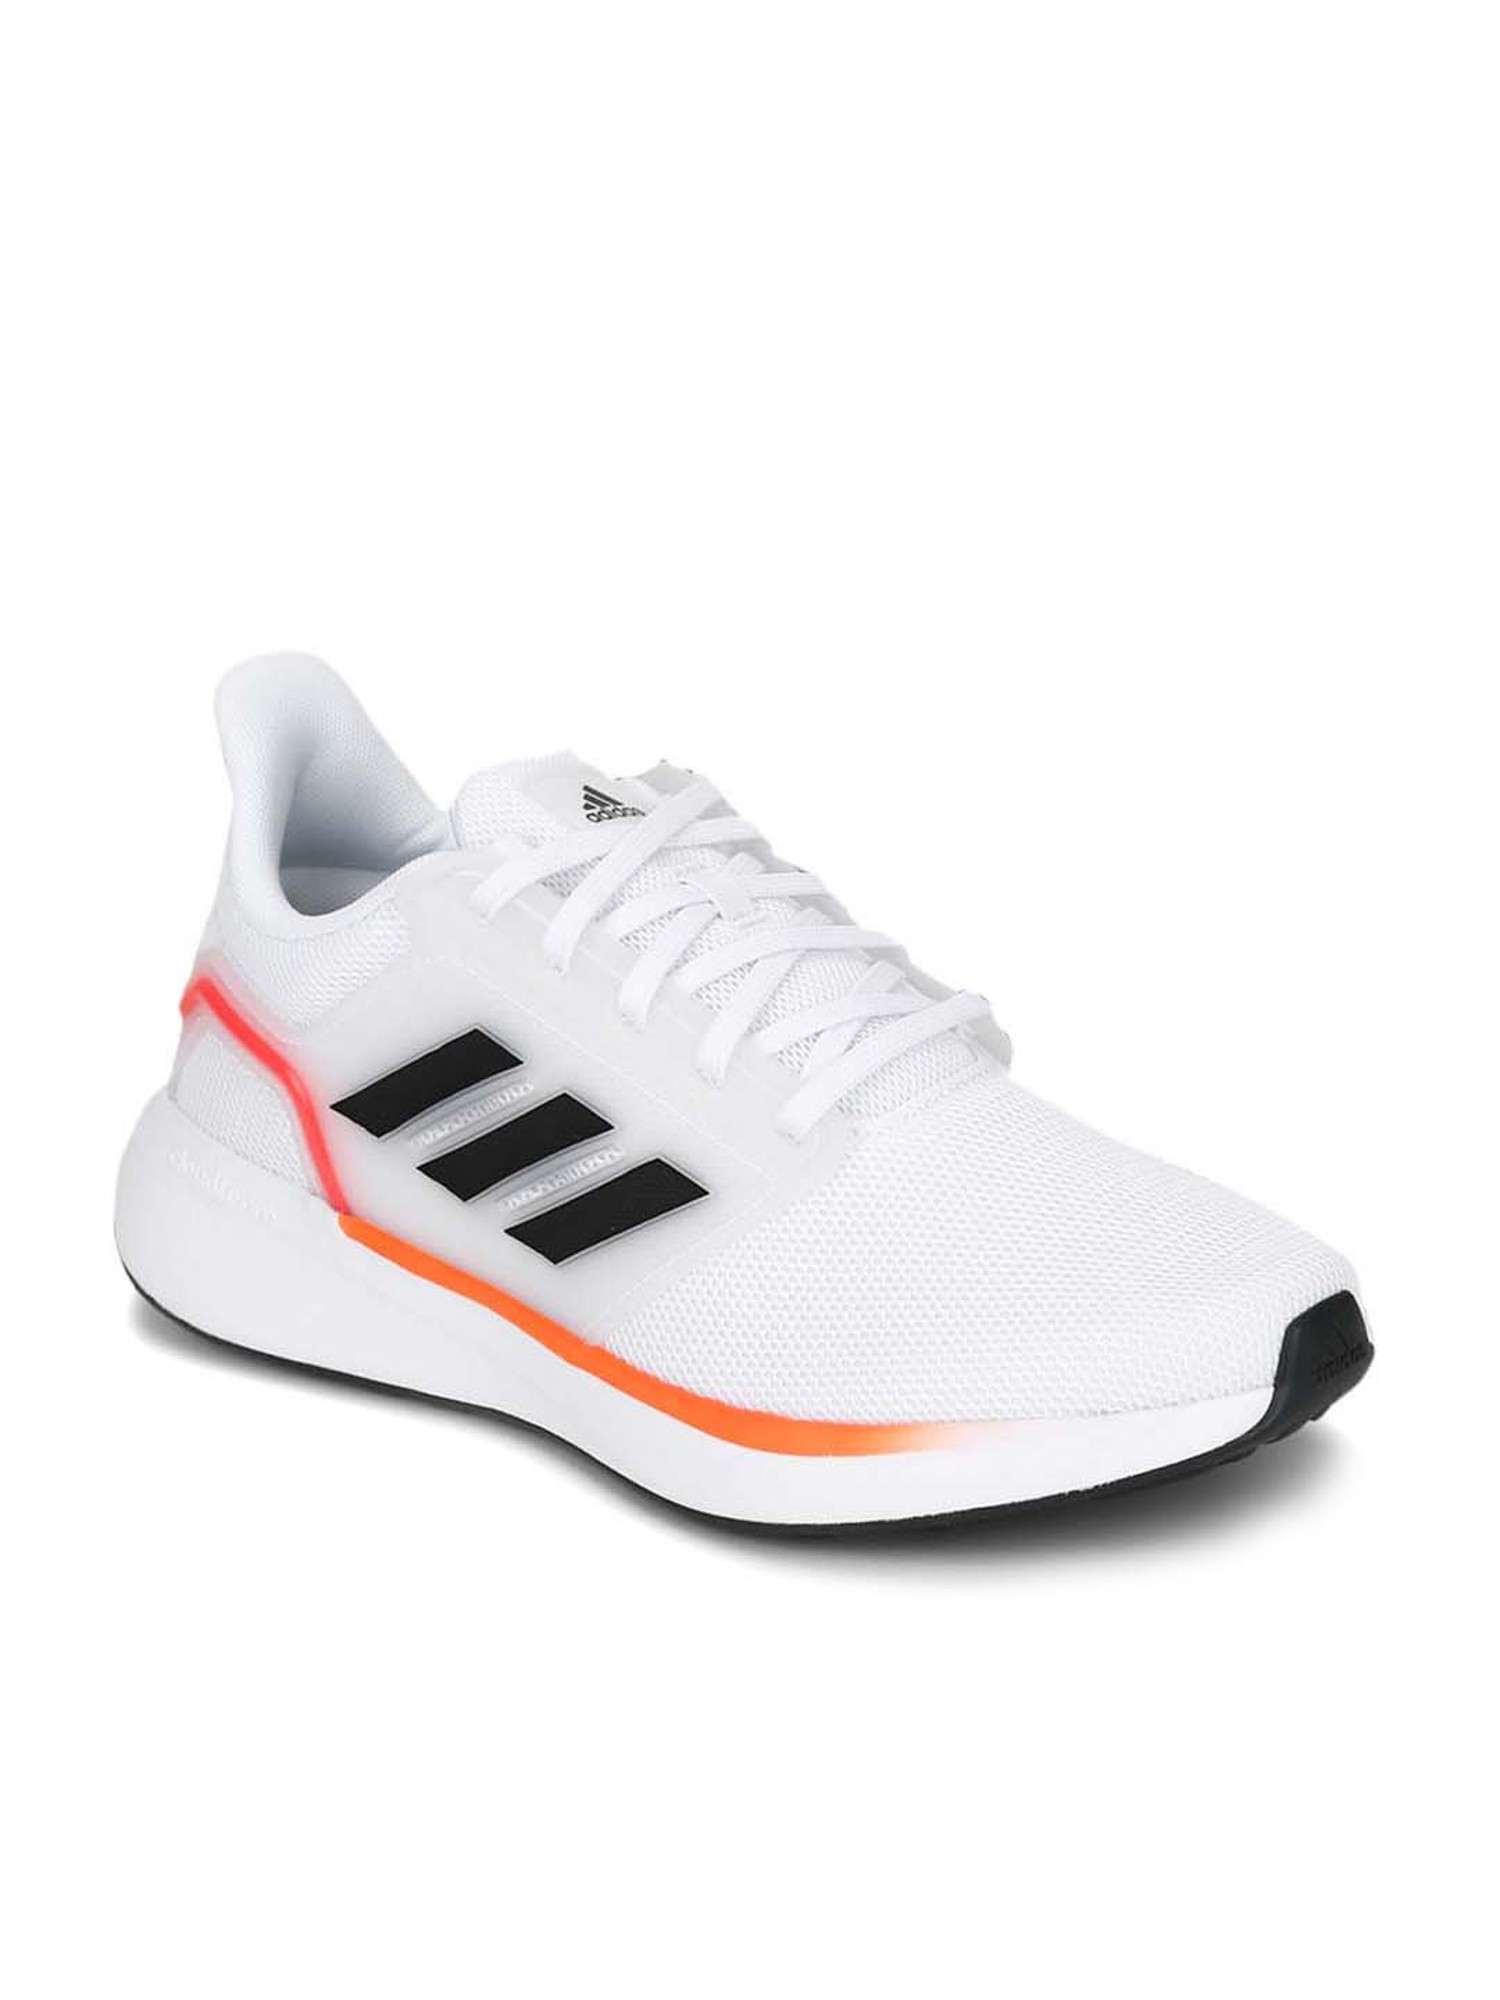 Buy Men's UB19 TD White Running Shoes for Men at Best Price @ CLiQ